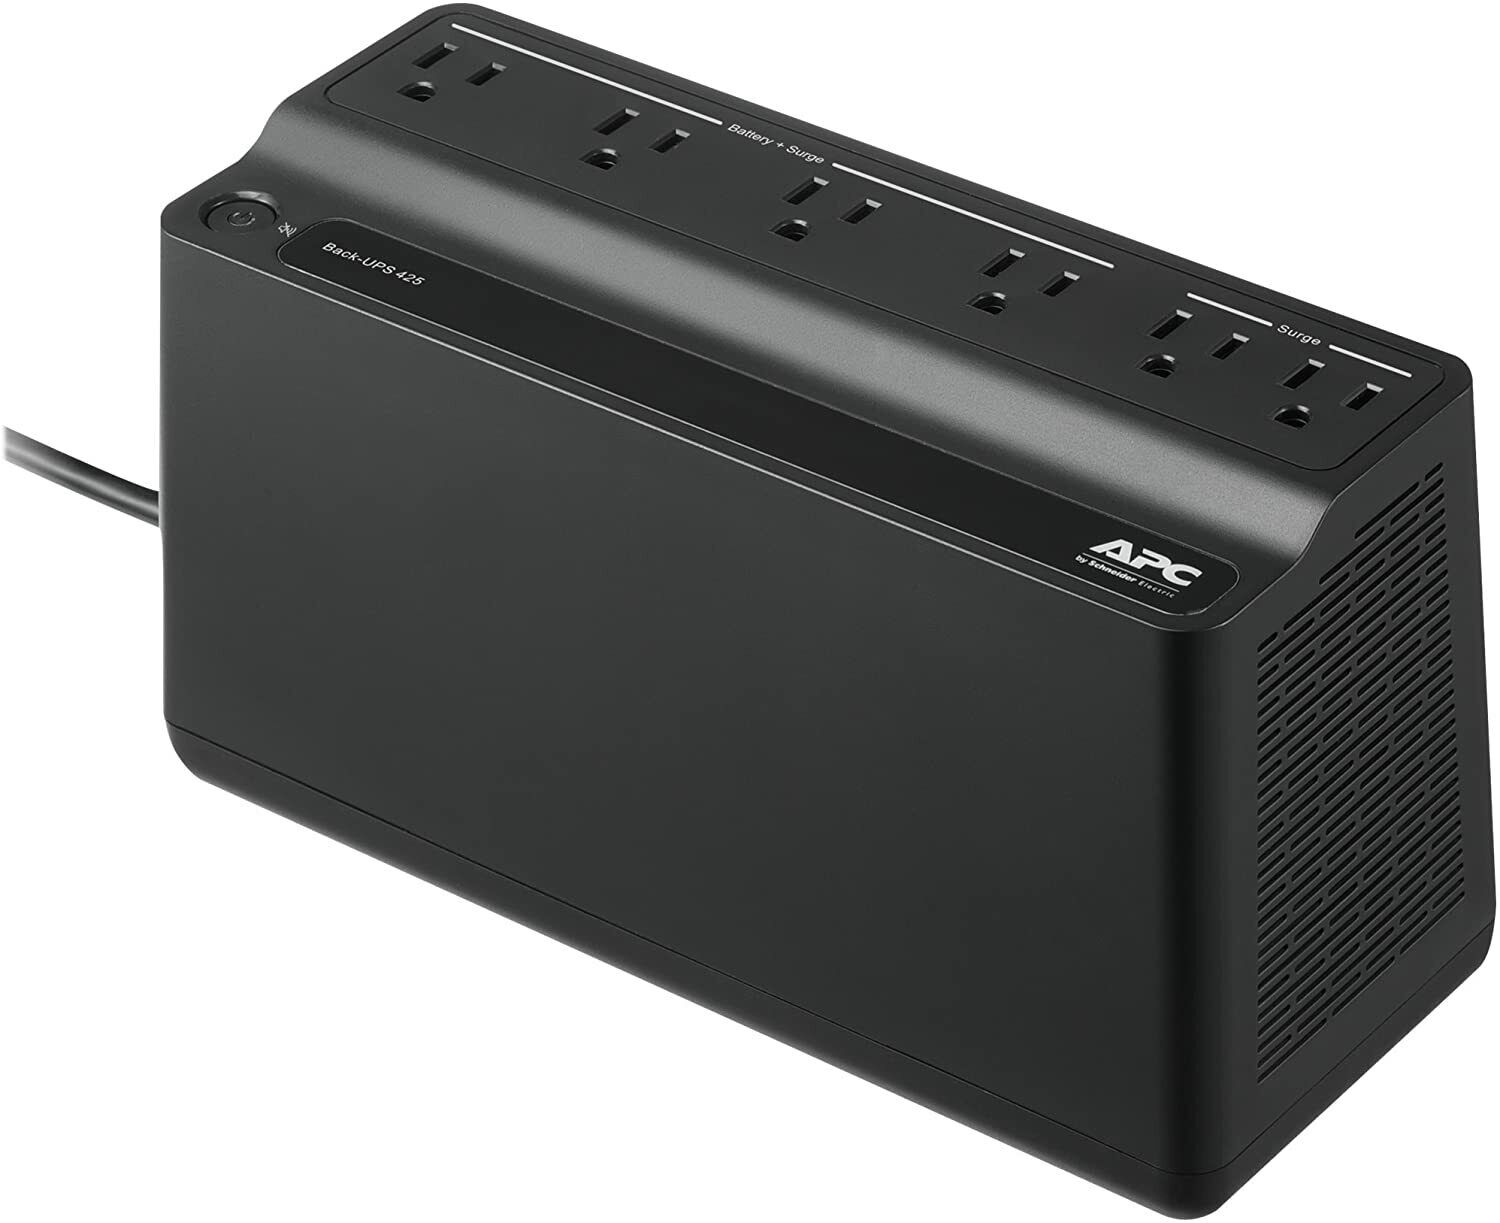 APC UPS, 425VA UPS Battery Backup Surge Protector, BE425M Backup Battery Supply